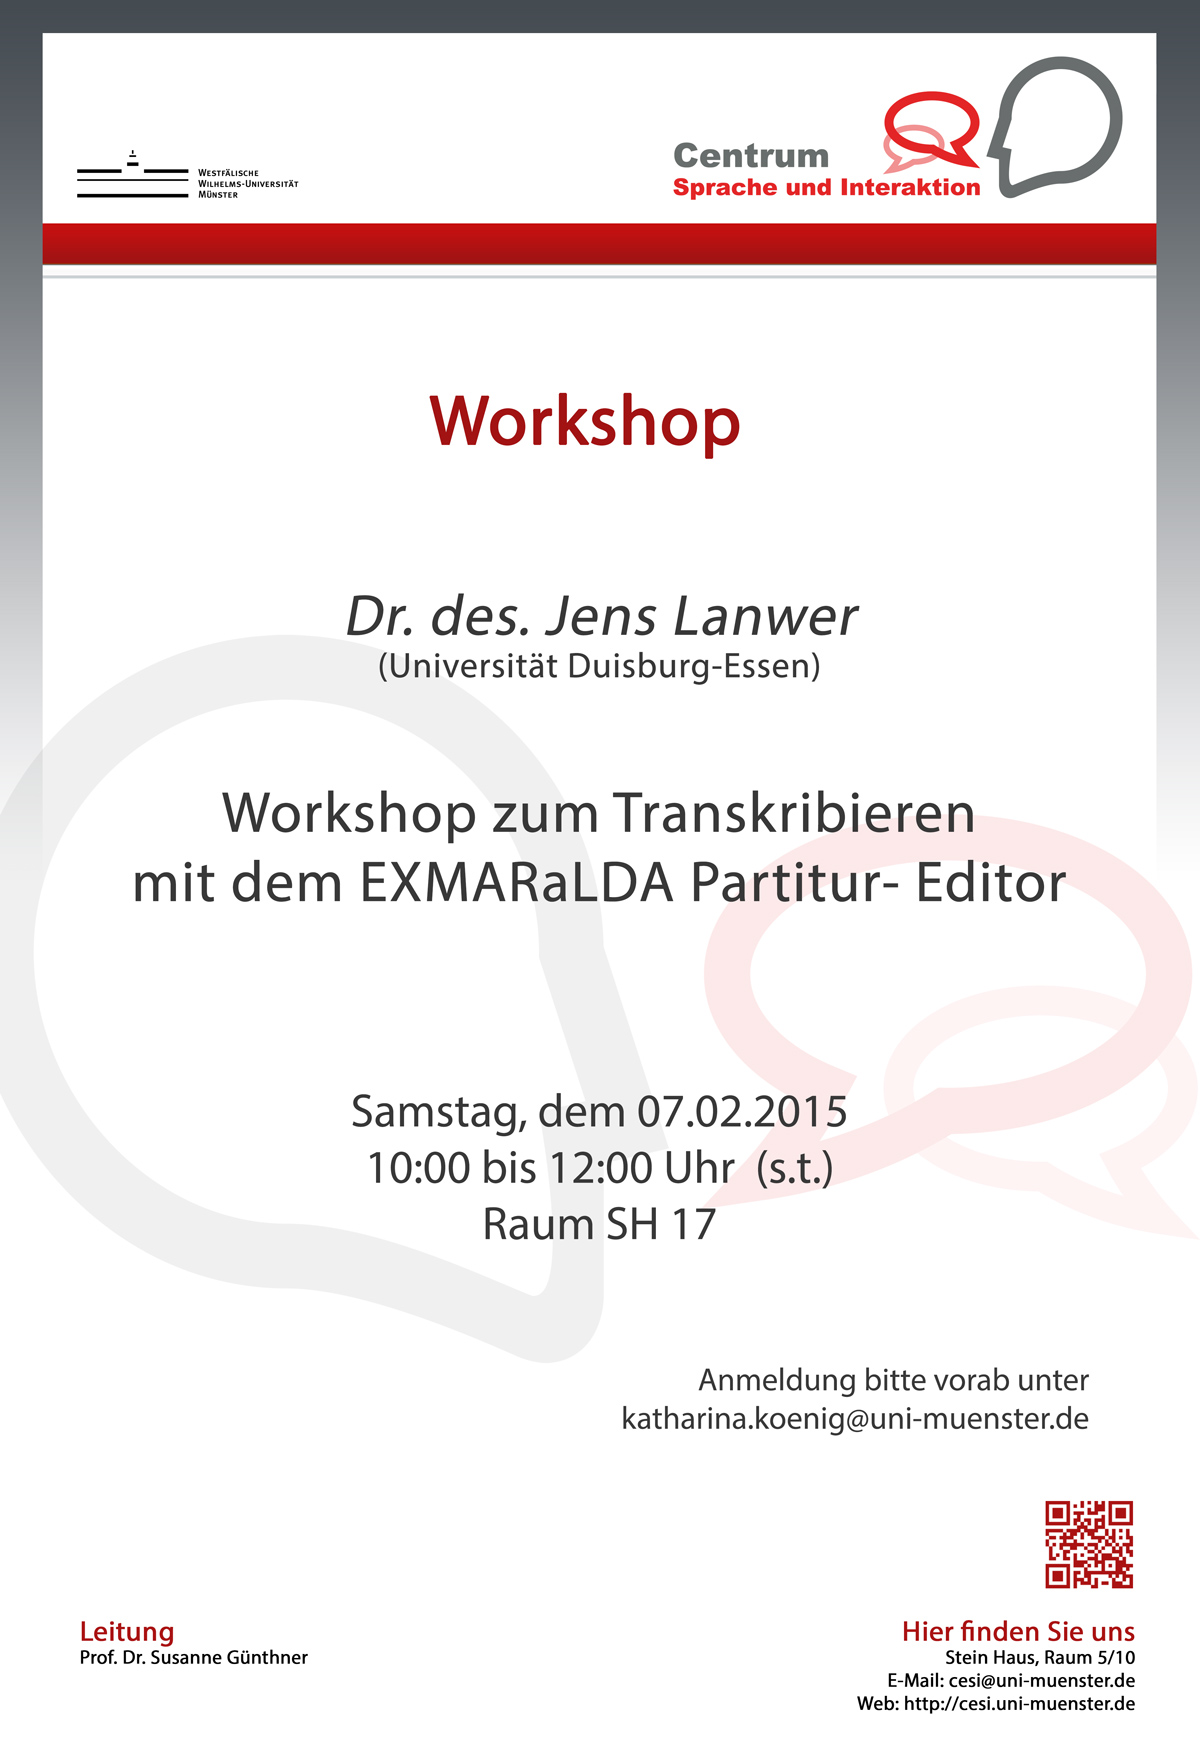 Workshop zum Transkribieren mit EXMARaLDA